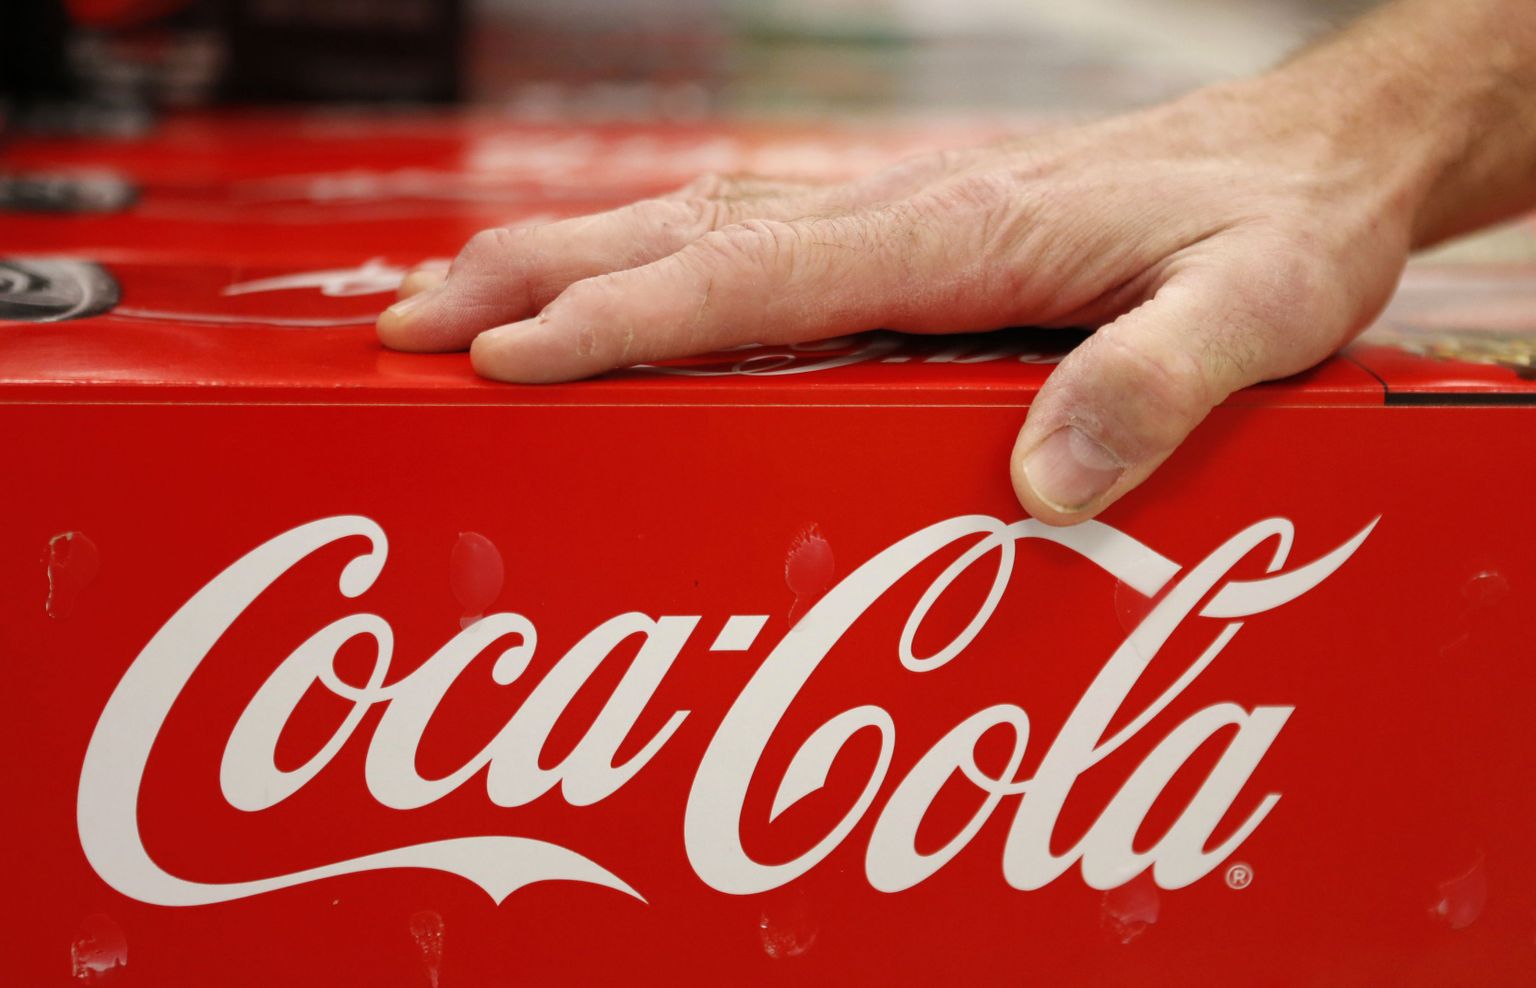 Coca-Cola kohta liigub palju väärarusaamu, nendib karastusjoogifirma.